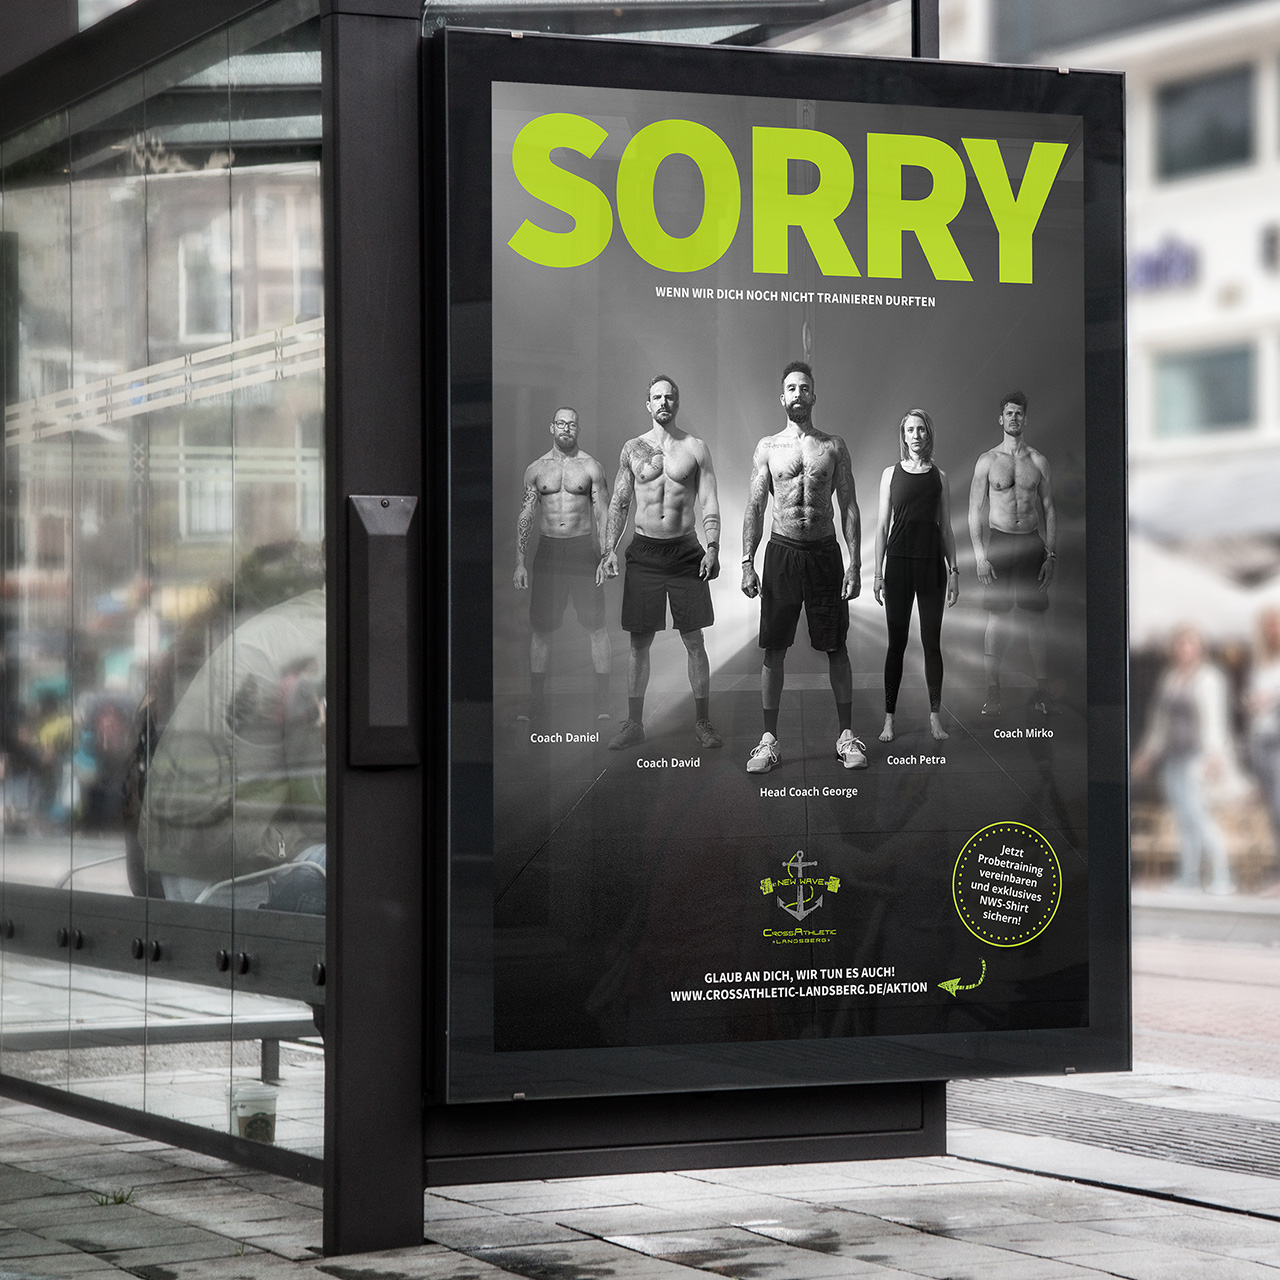 Mockup Anzeige an einer Bushaltestelle mit NWS Plakat. Zu sehen sind die fünf Coaches und die Aufschrift: Sorry, wenn wir dich noch nicht trainieren durften.